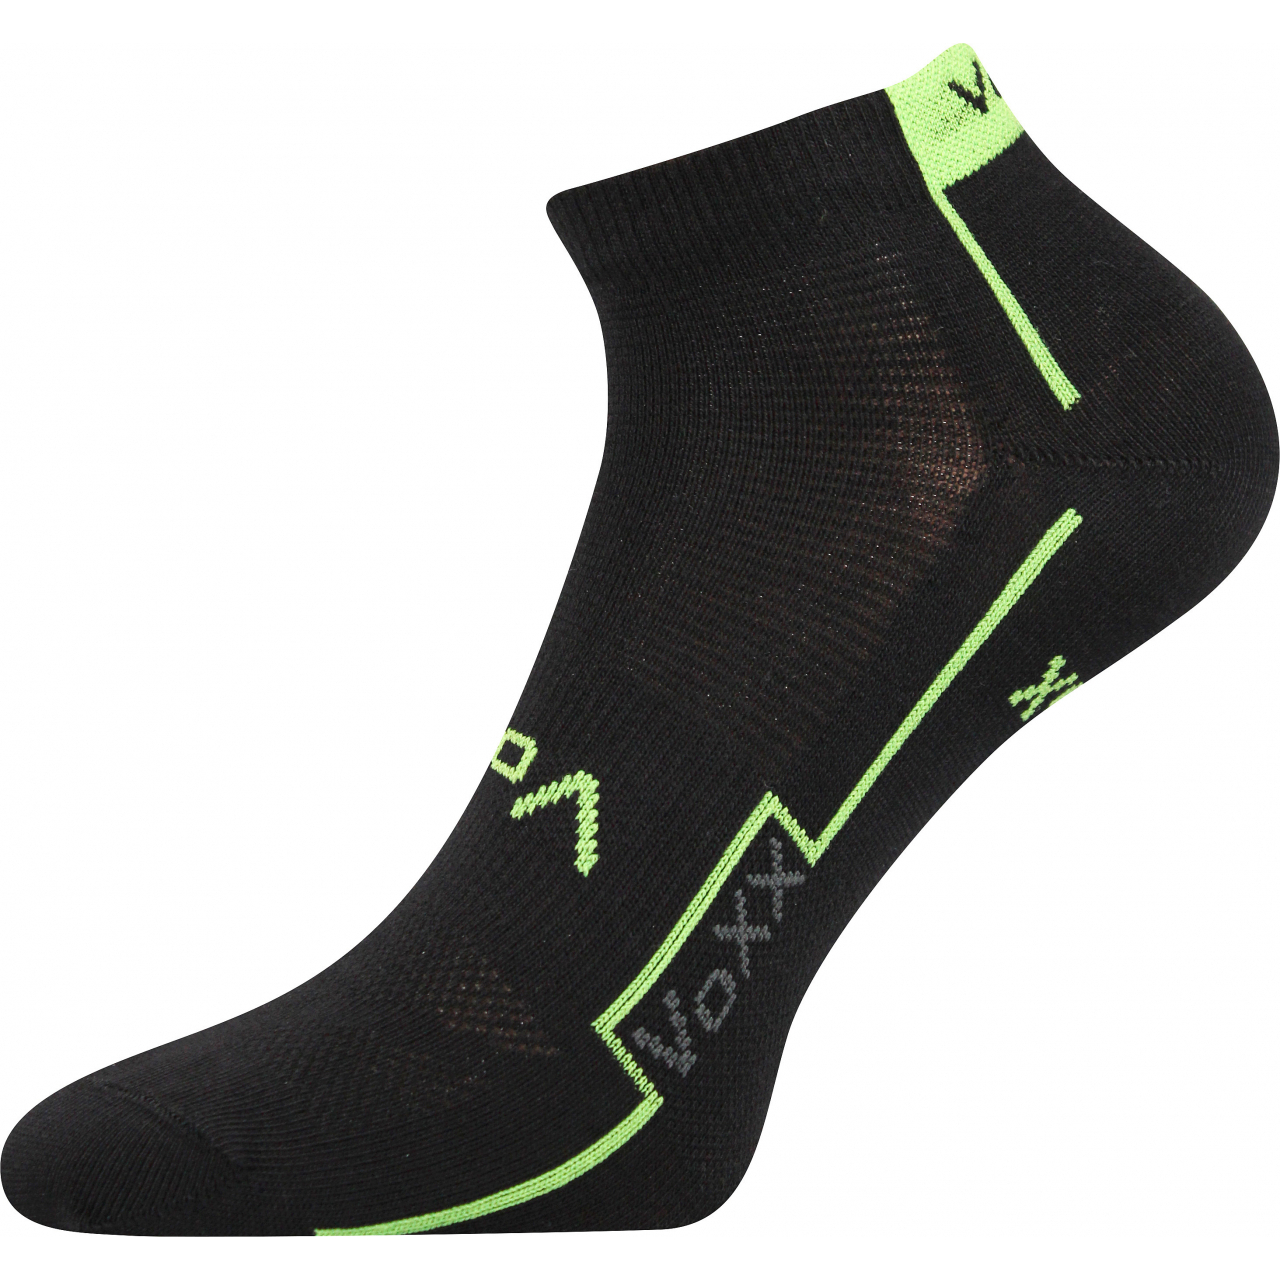 Ponožky unisex sportovní Voxx Kato - černé-zelené, 43-46